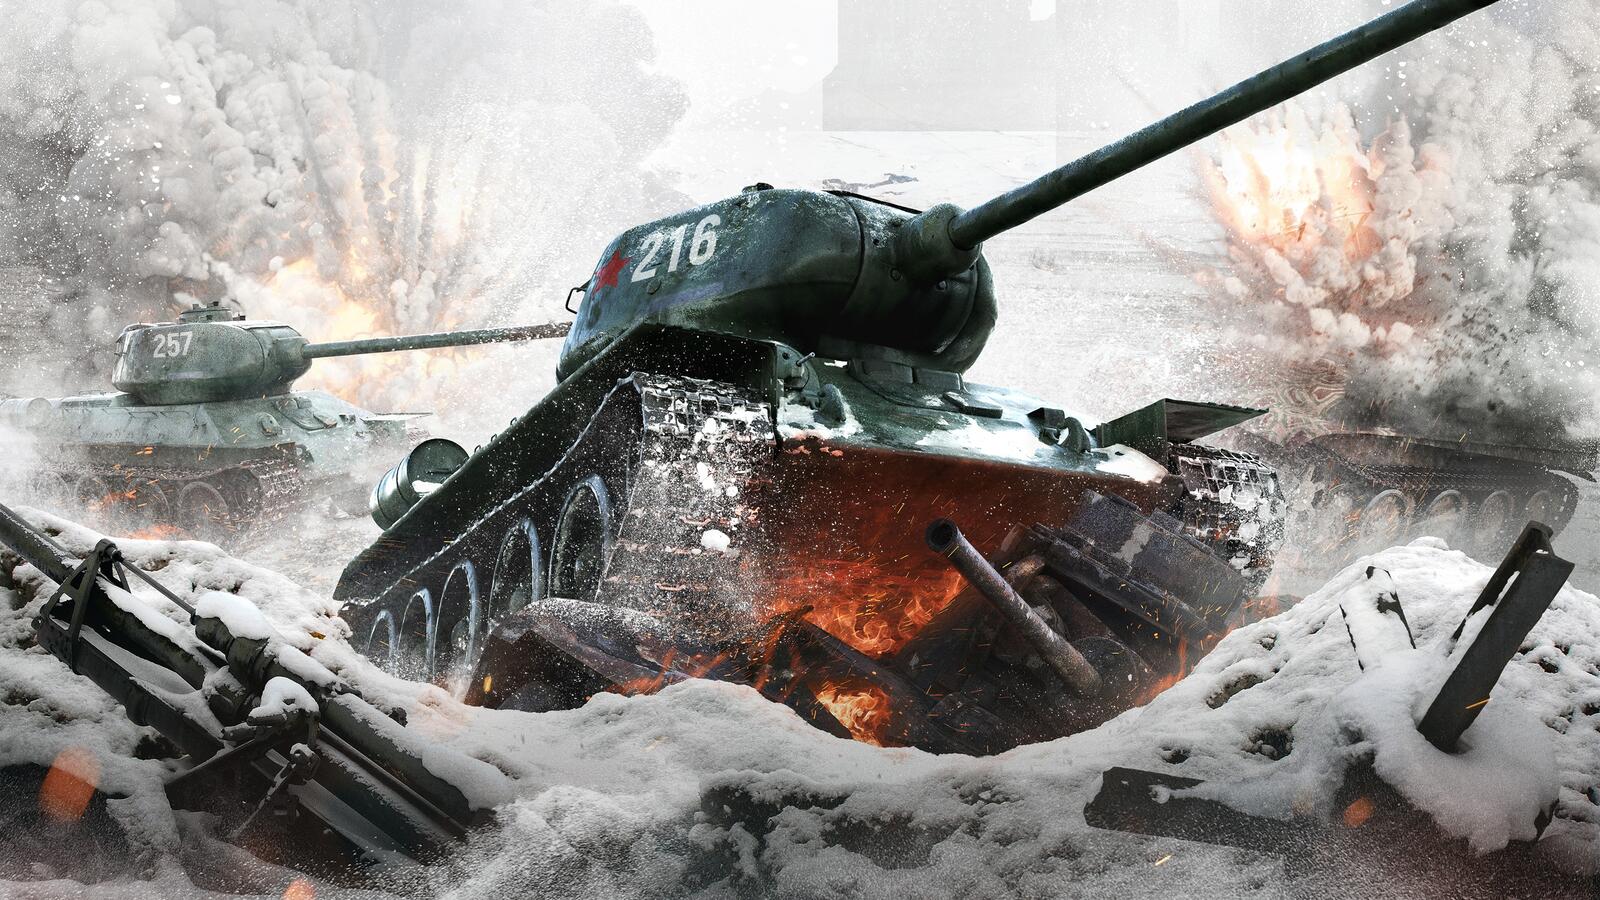 免费照片壁纸 俄罗斯T-34坦克